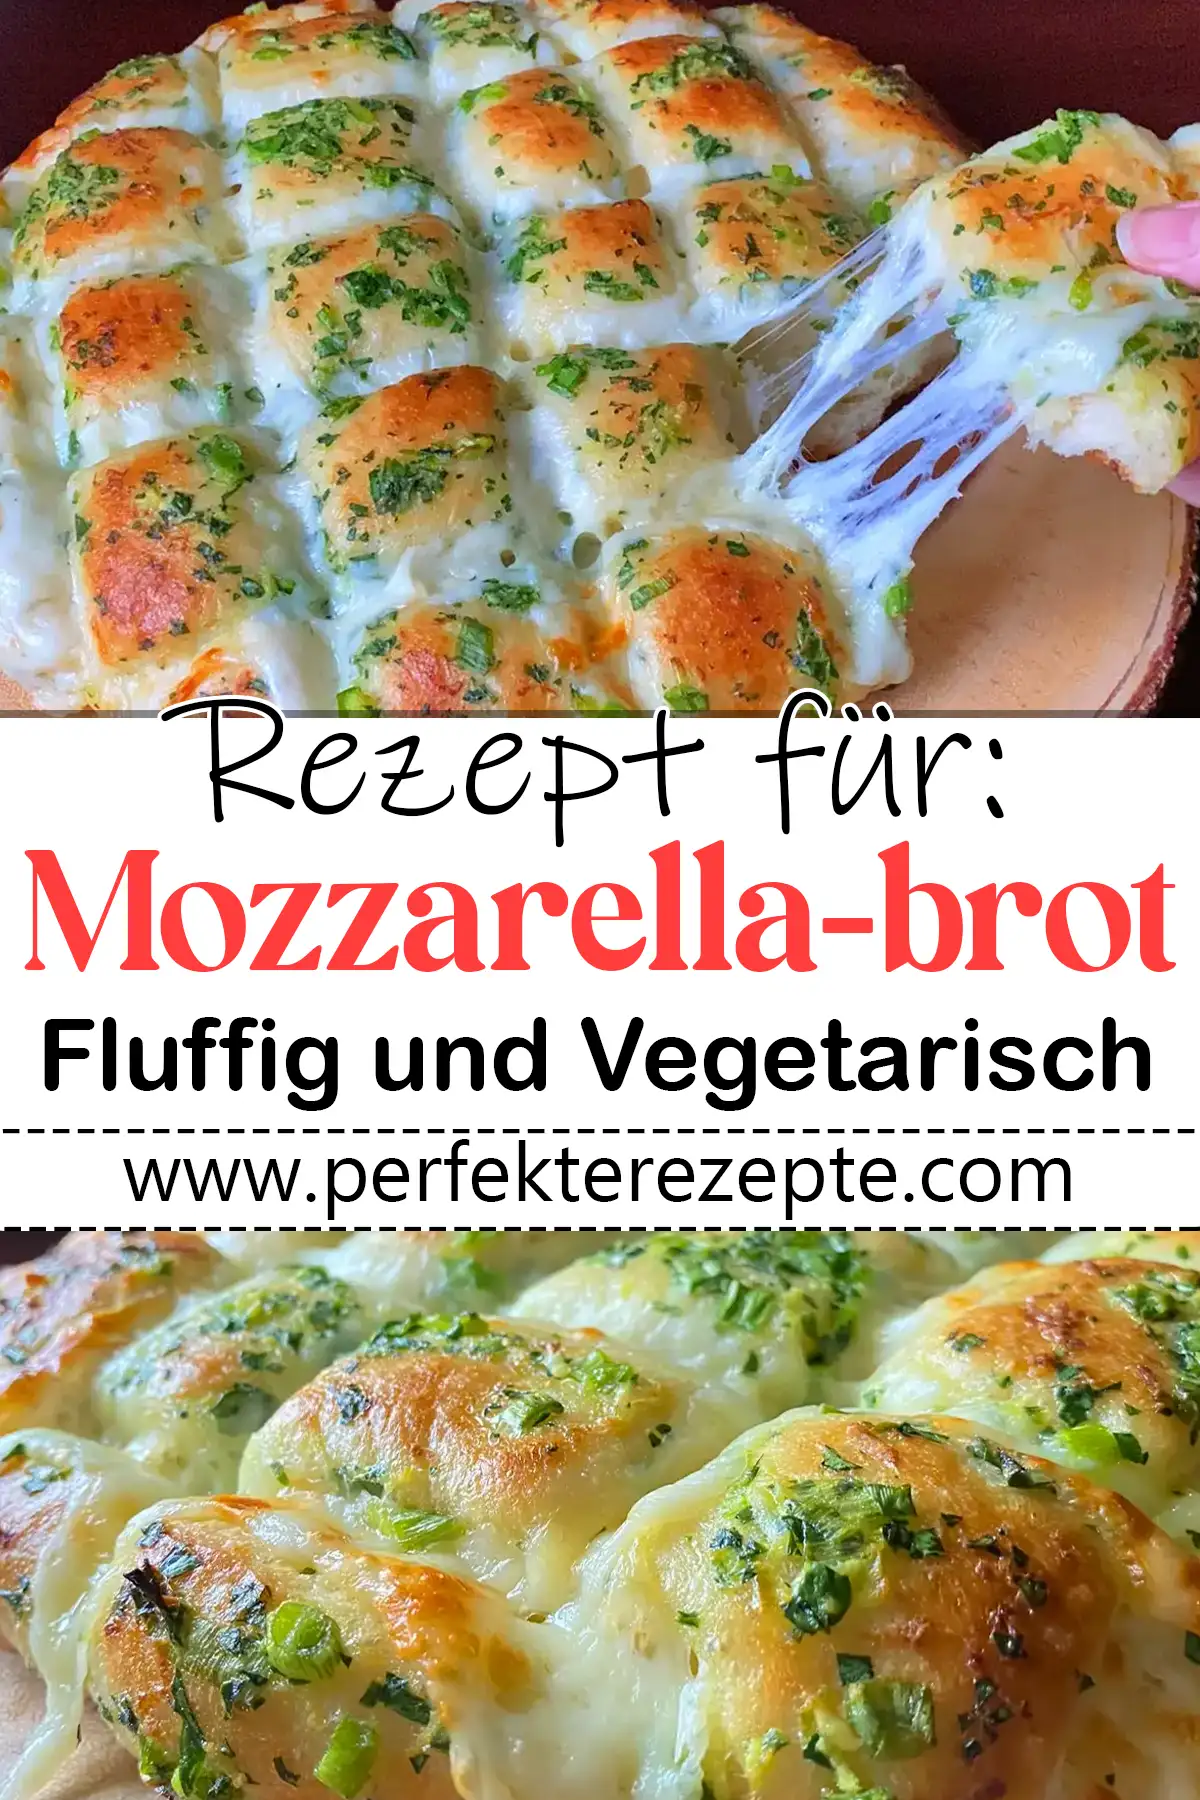 Mozzarella-brot Rezept : Fluffig und Vegetarisch